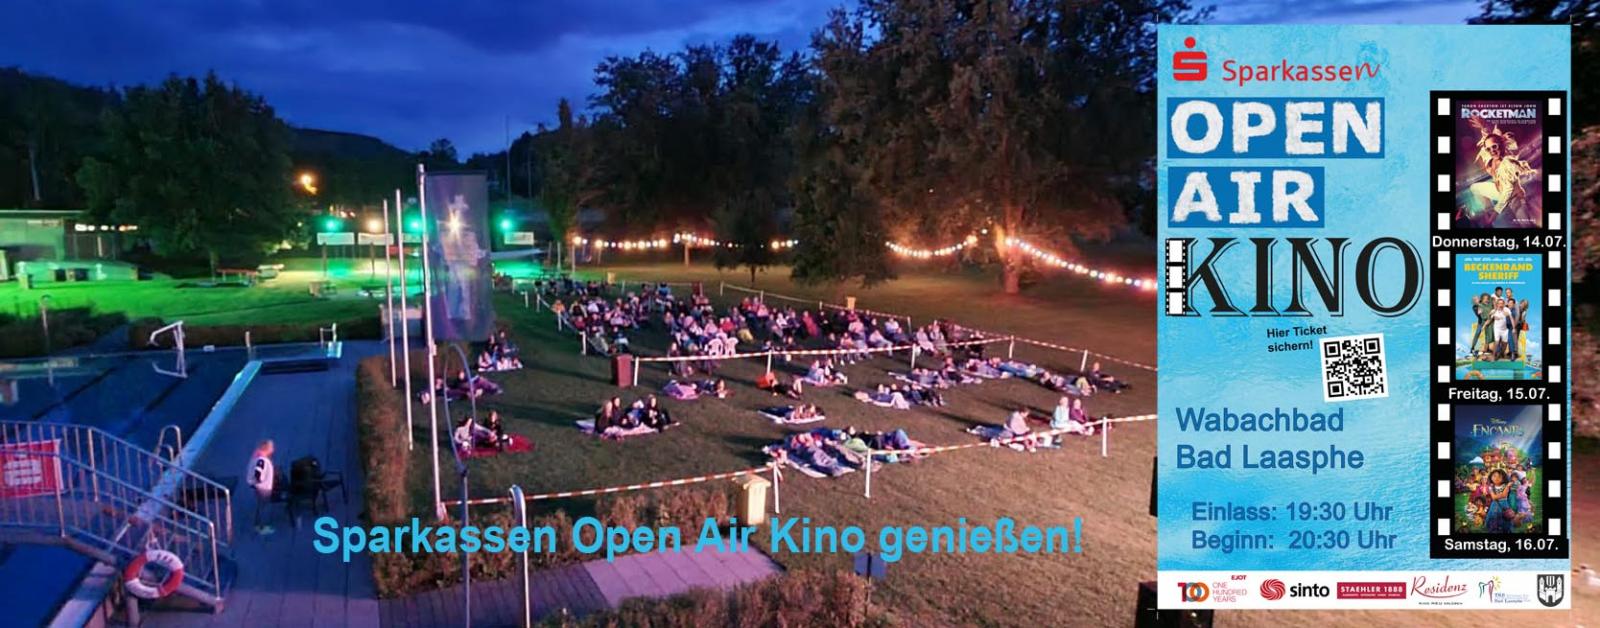 Sparkassen Open-Air Kino 22